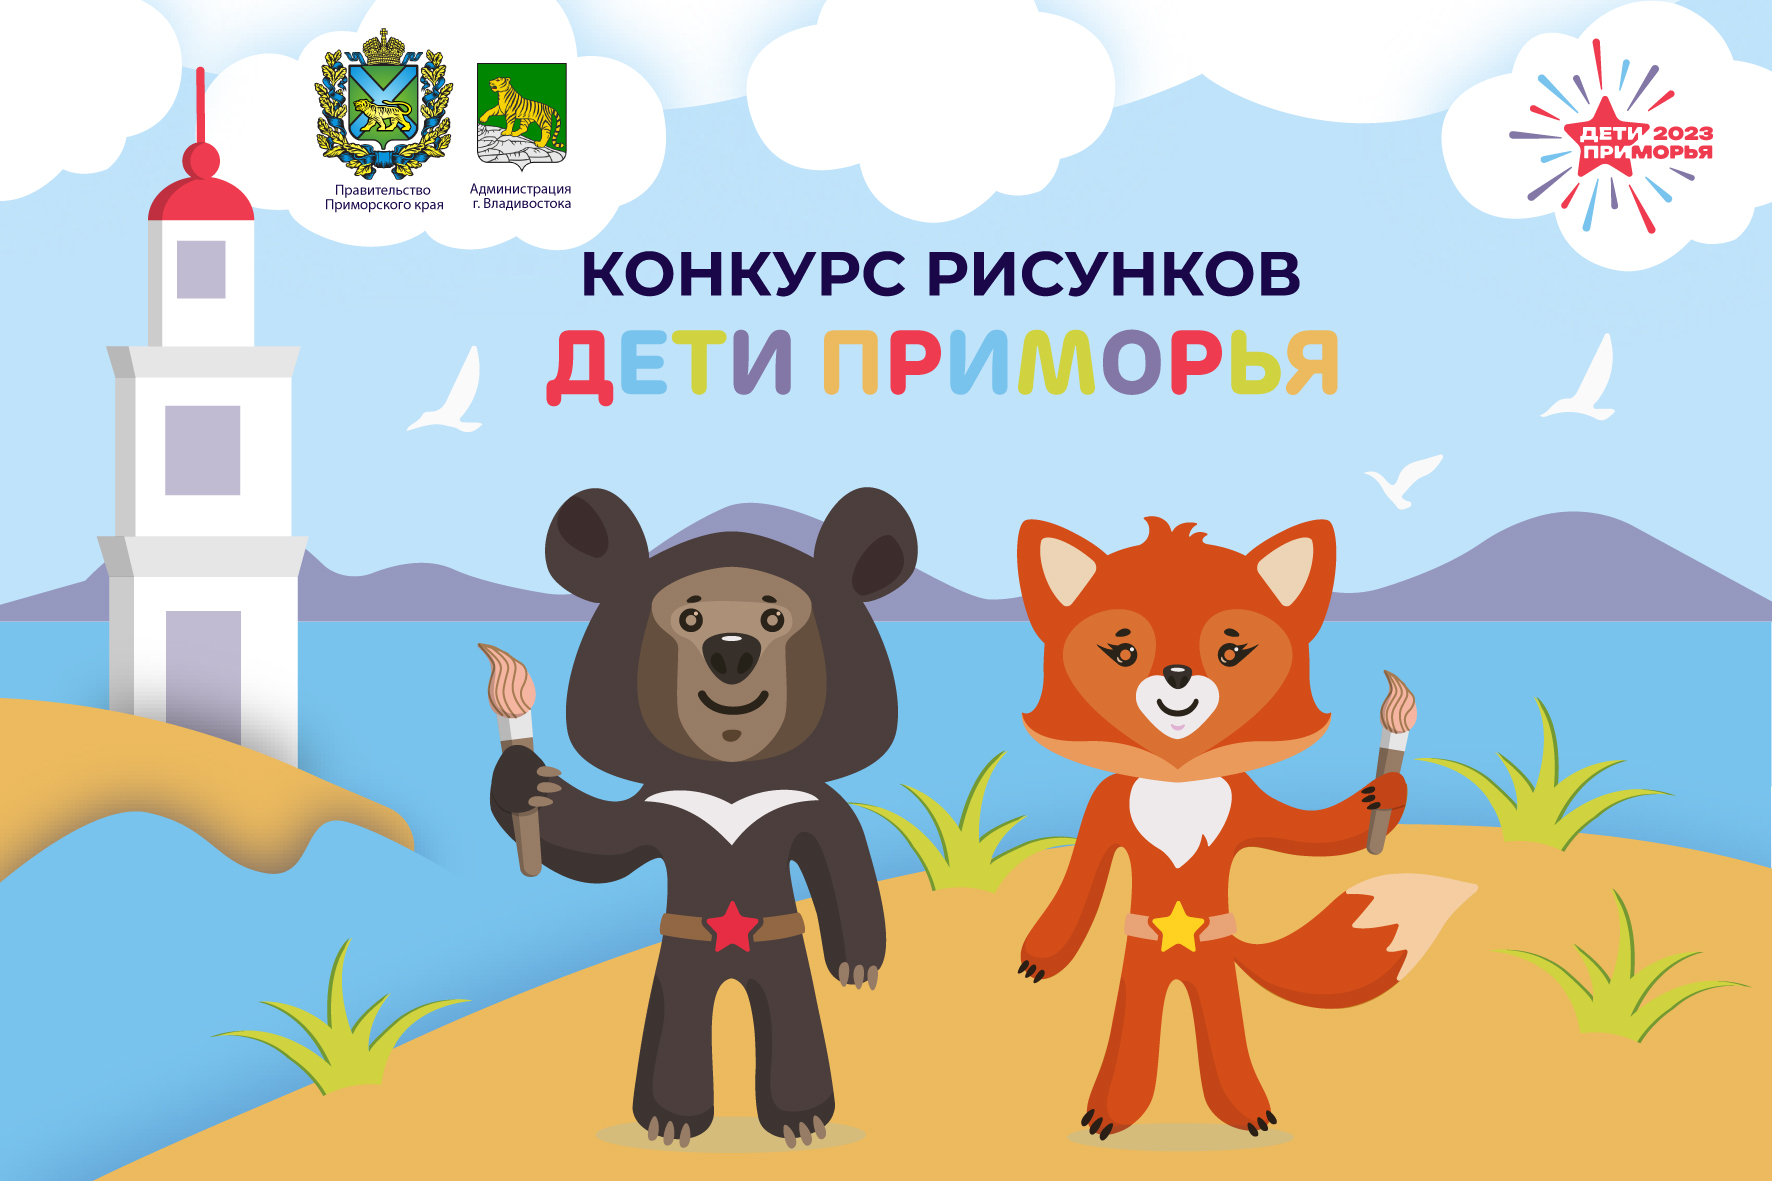 Победители детского конкурса рисунков получат билеты на церемонию открытия игр «Дети Приморья».